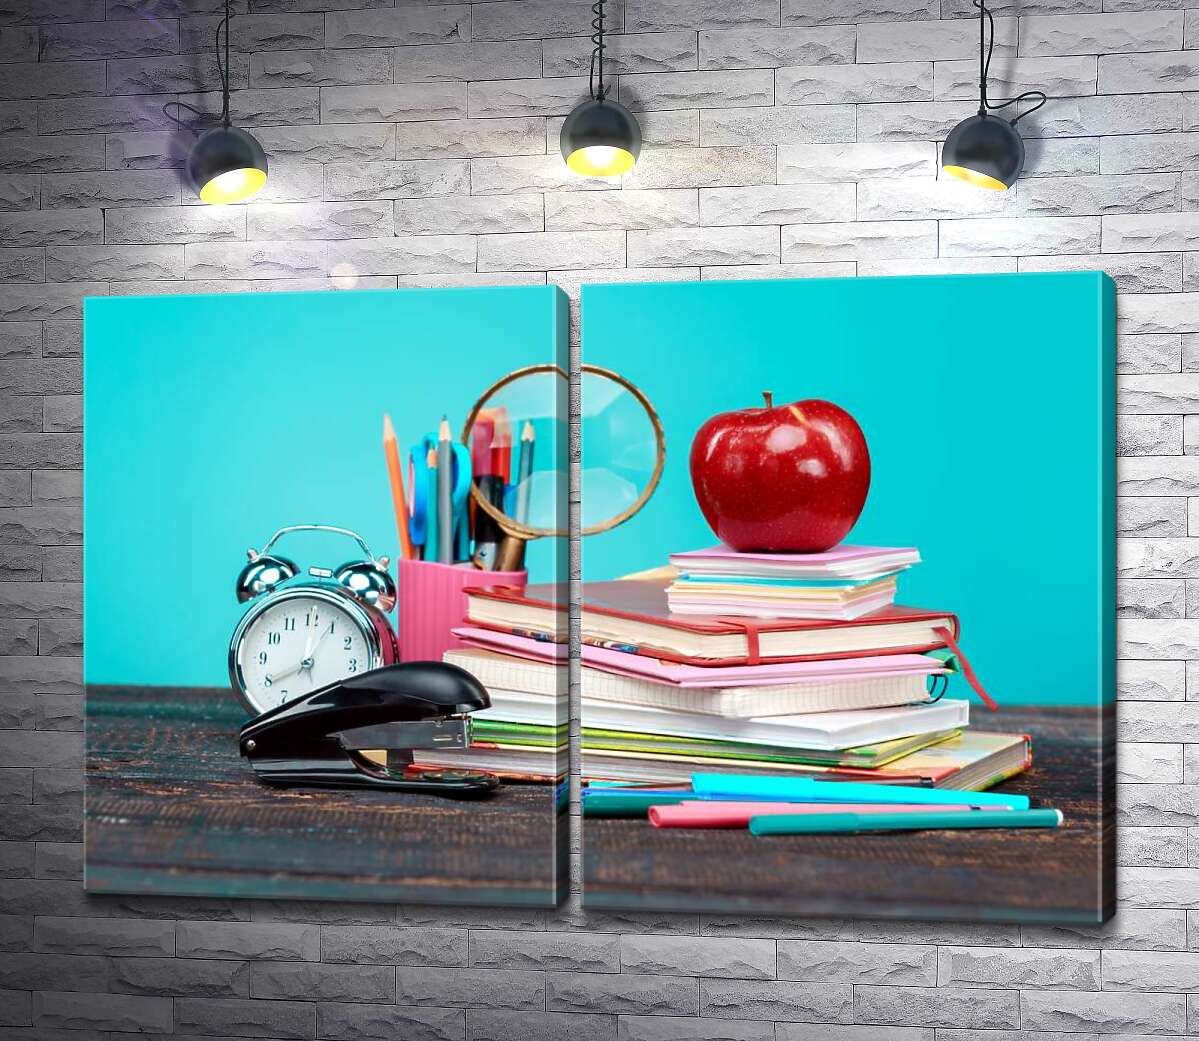 модульная картина Натюрморт школьника: тетради, фломастеры, часы, степлер и яблоко